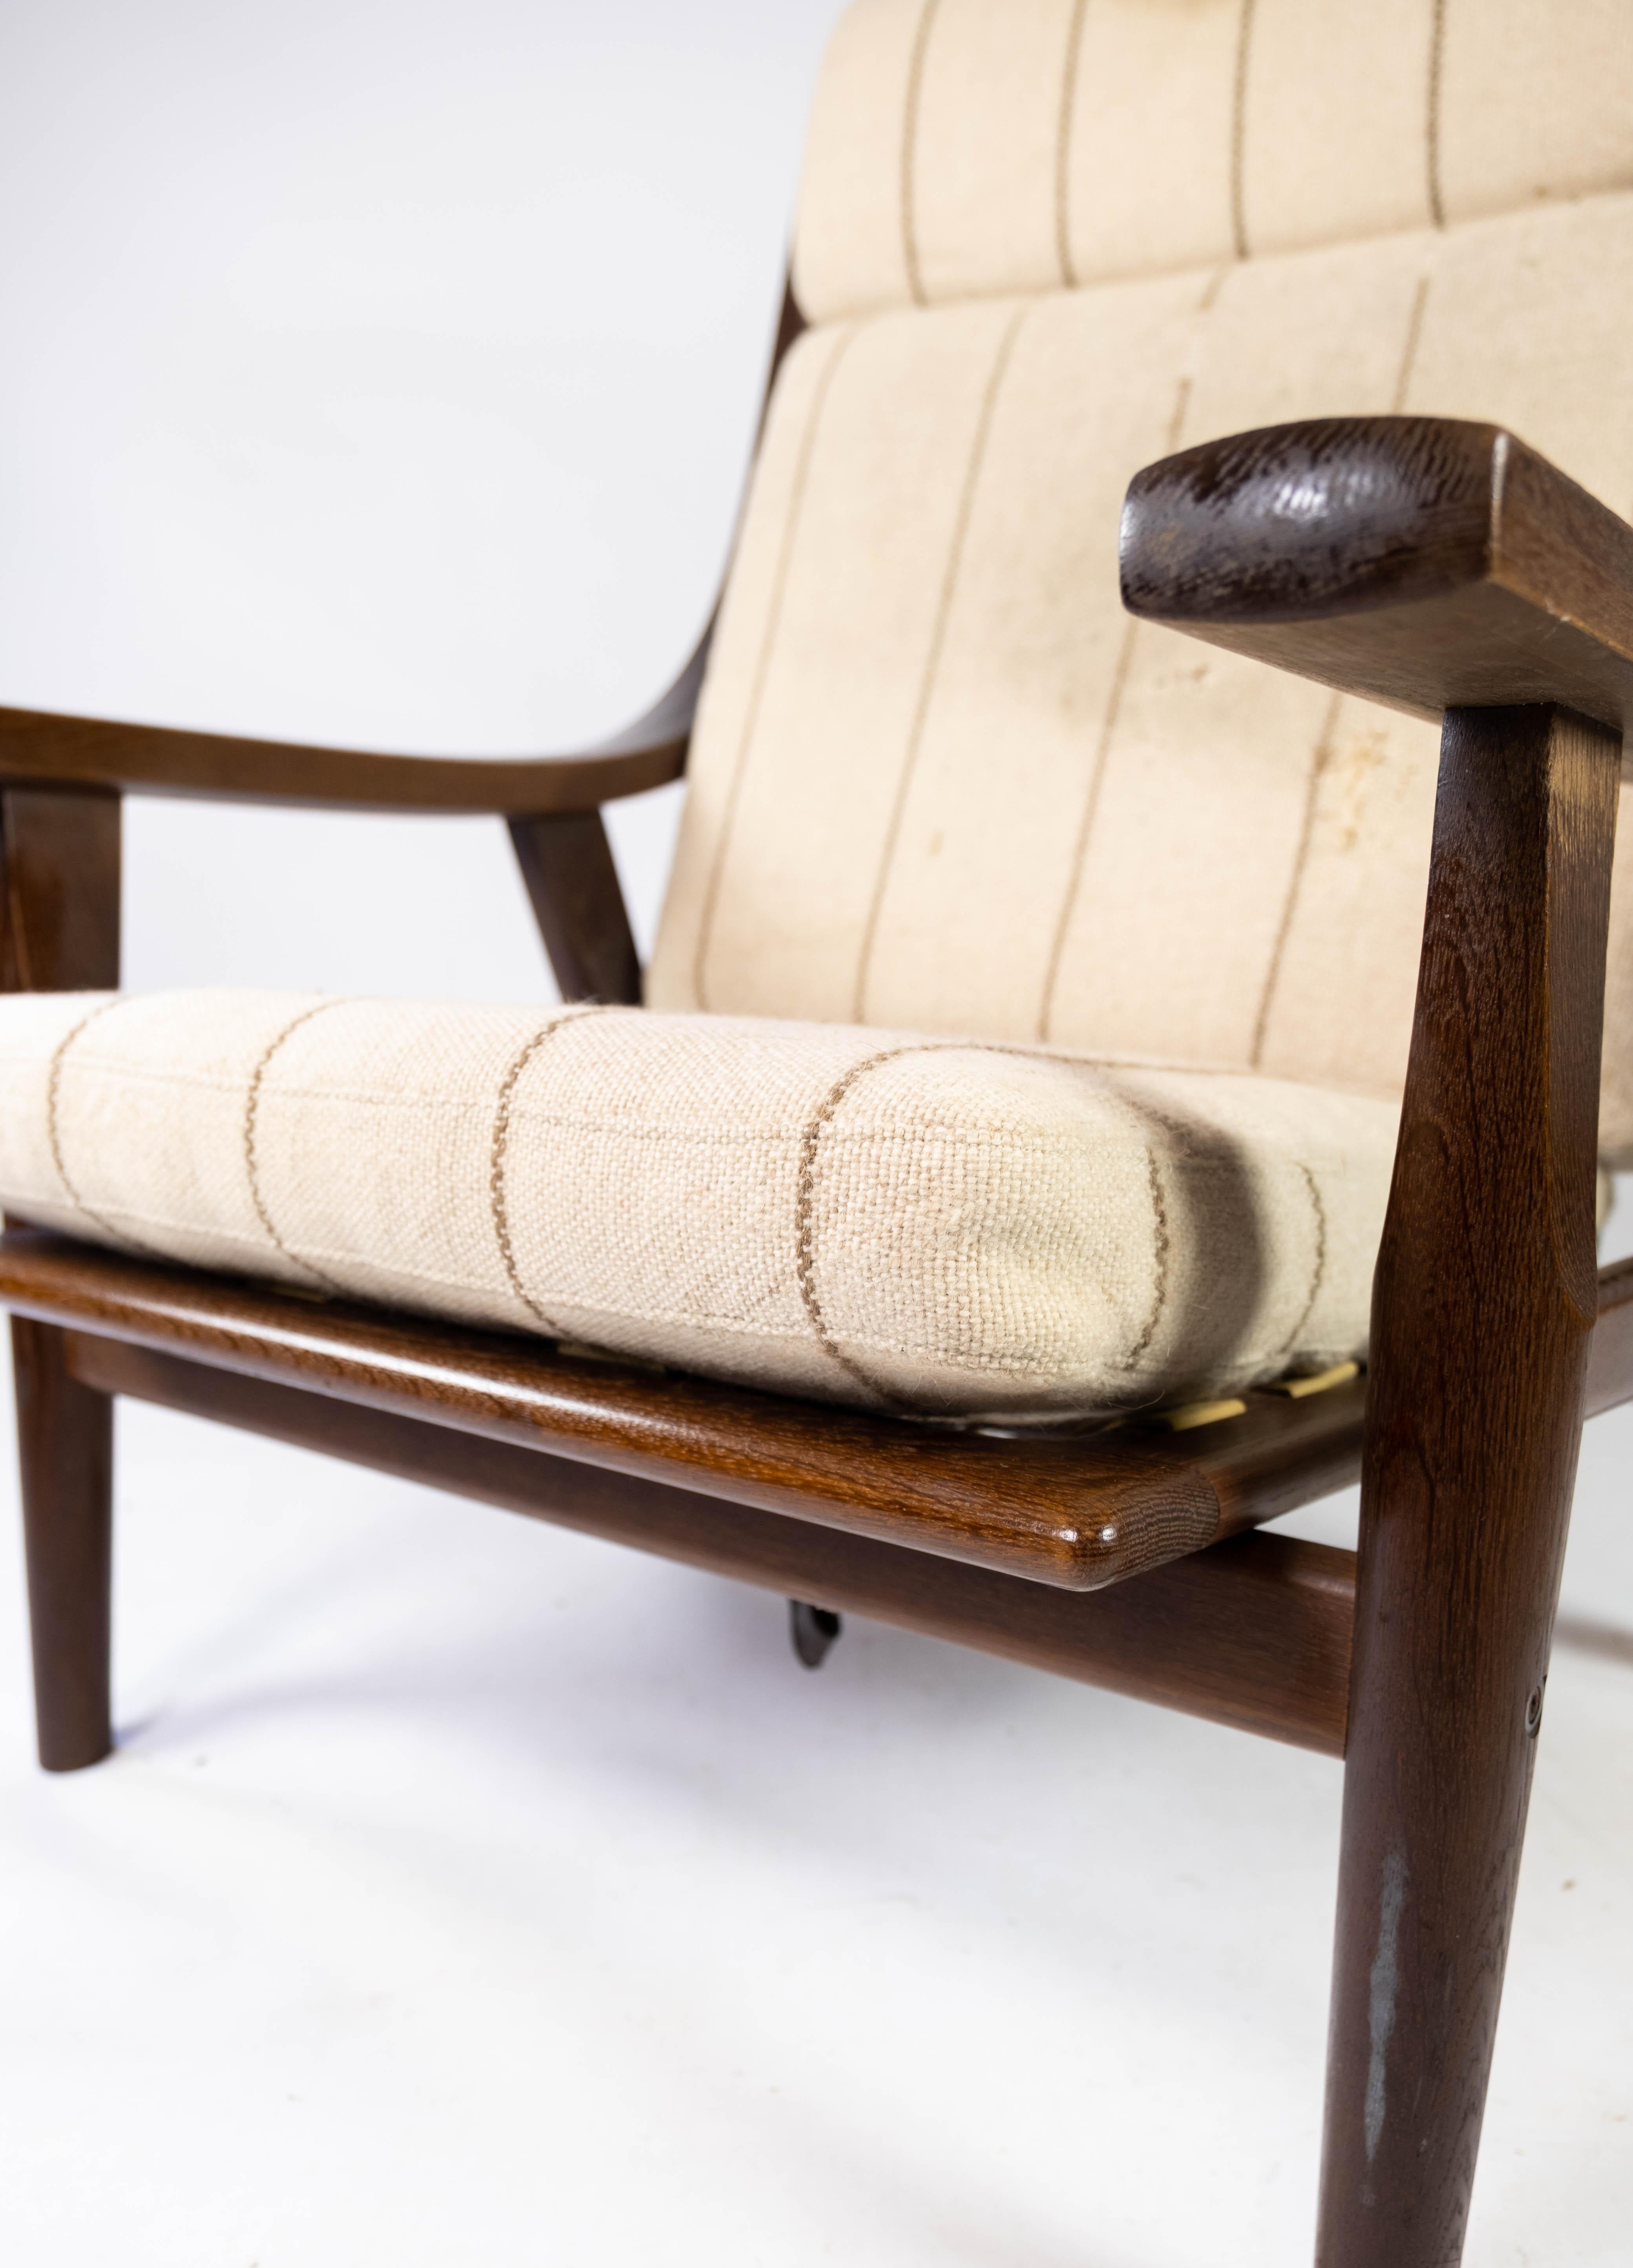 Ce fauteuil en chêne foncé, tapissé de tissu clair et portant le numéro de modèle GE530, est un splendide exemple de la contribution unique de Hans J. Wegner au design du mobilier danois des années 1960. La chaise dégage une élégance et une